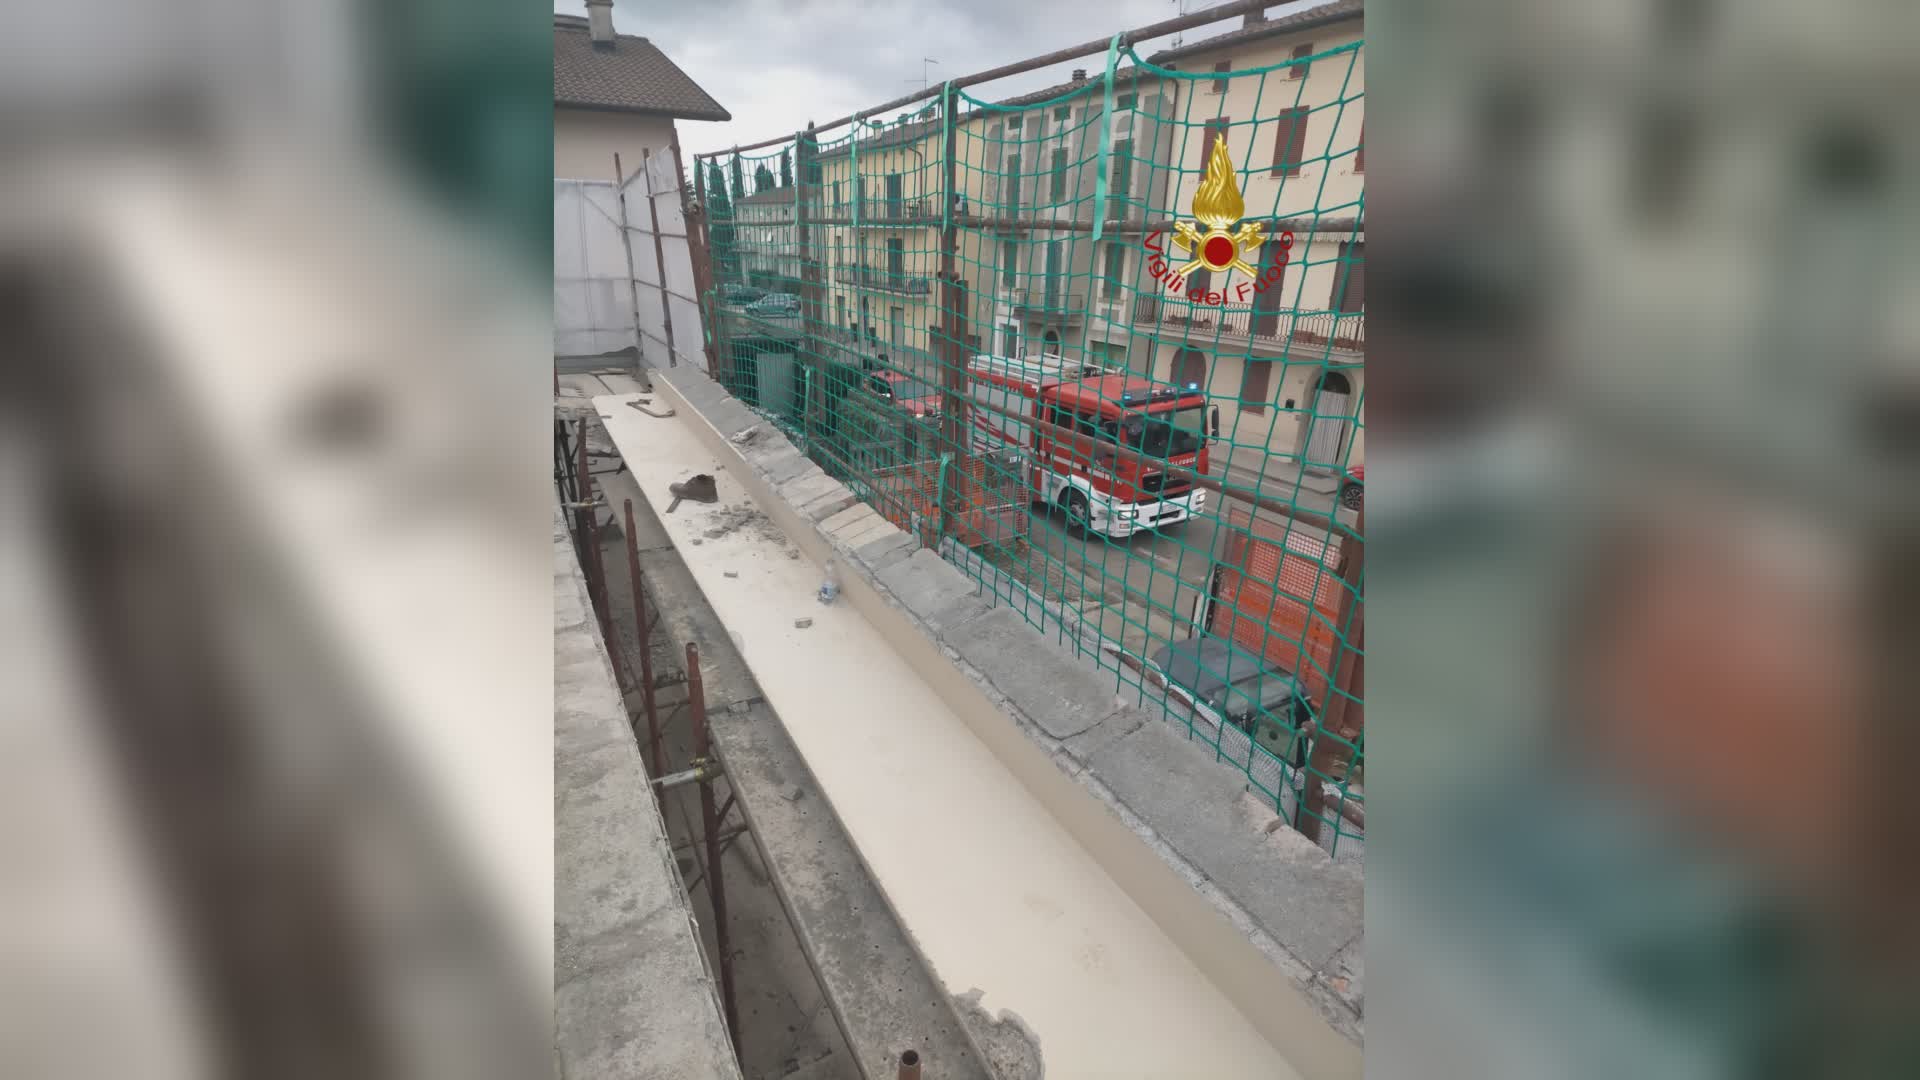 Incedente sul lavoro: crolla muro a S. Giustino, ferito operaio